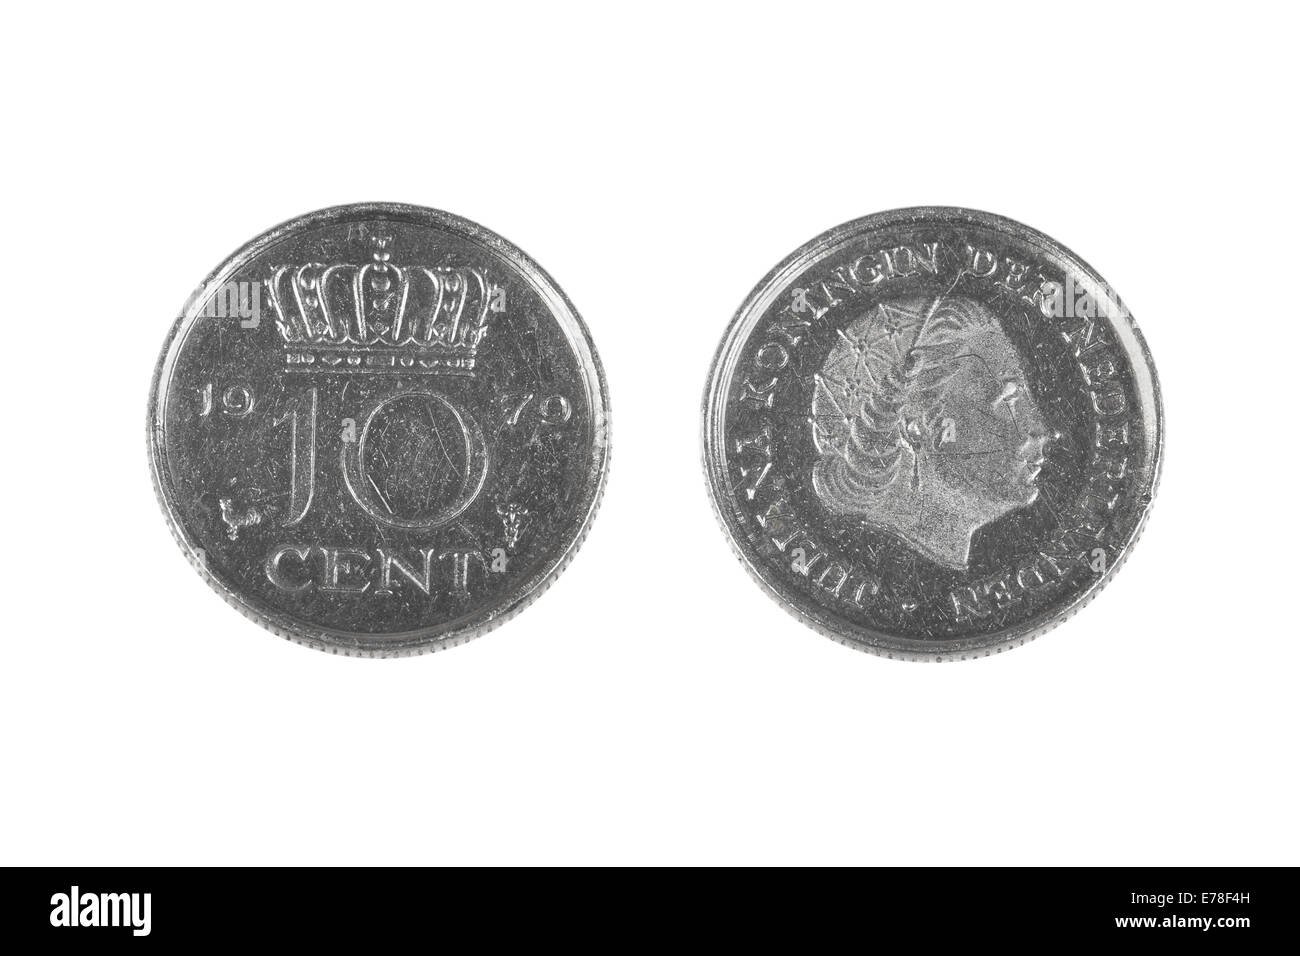 Dieci centesimi moneta da Paesi Bassi, obsoleto decimo del fiorino olandese. Entrambi i lati isolati su sfondo bianco Foto Stock